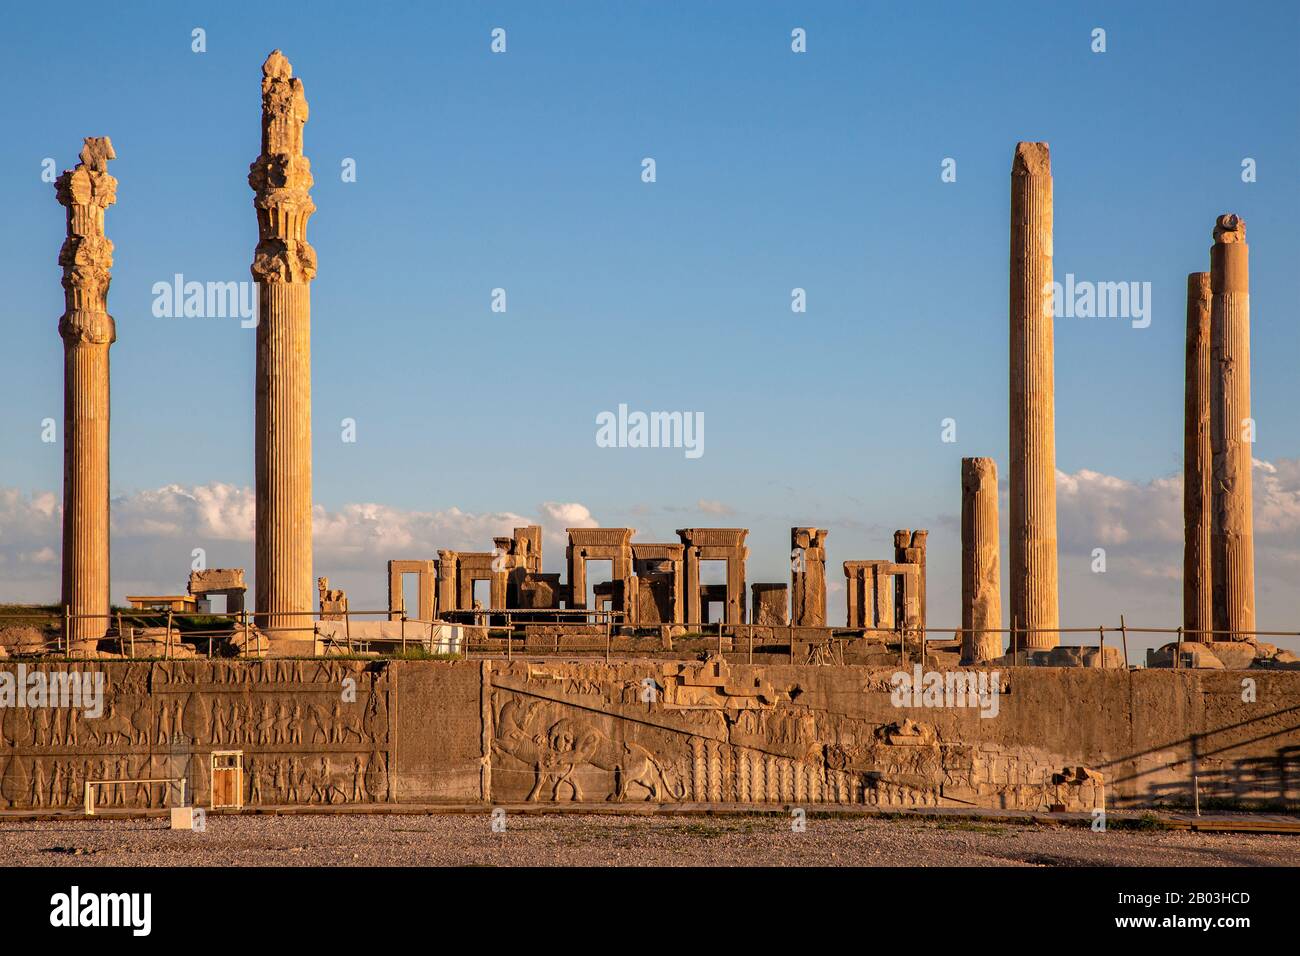 Ruines de l'ancienne ville persane de Persepolis près de Shiraz, Iran Banque D'Images